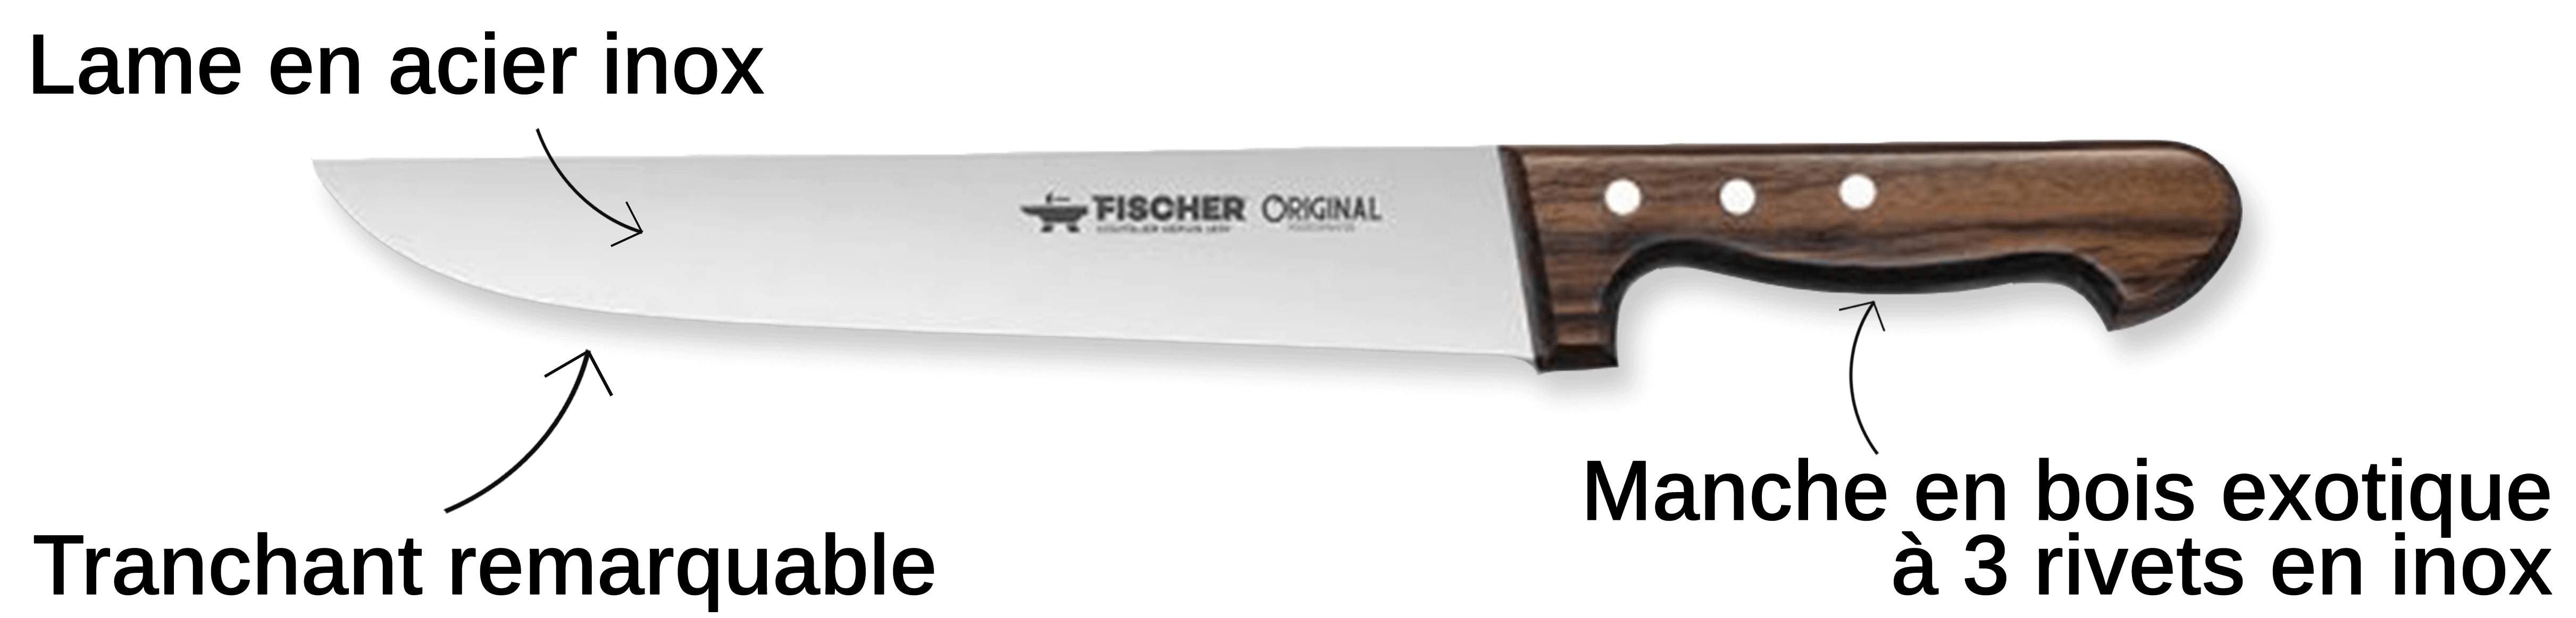 Découvrez le couteau Fischer ici